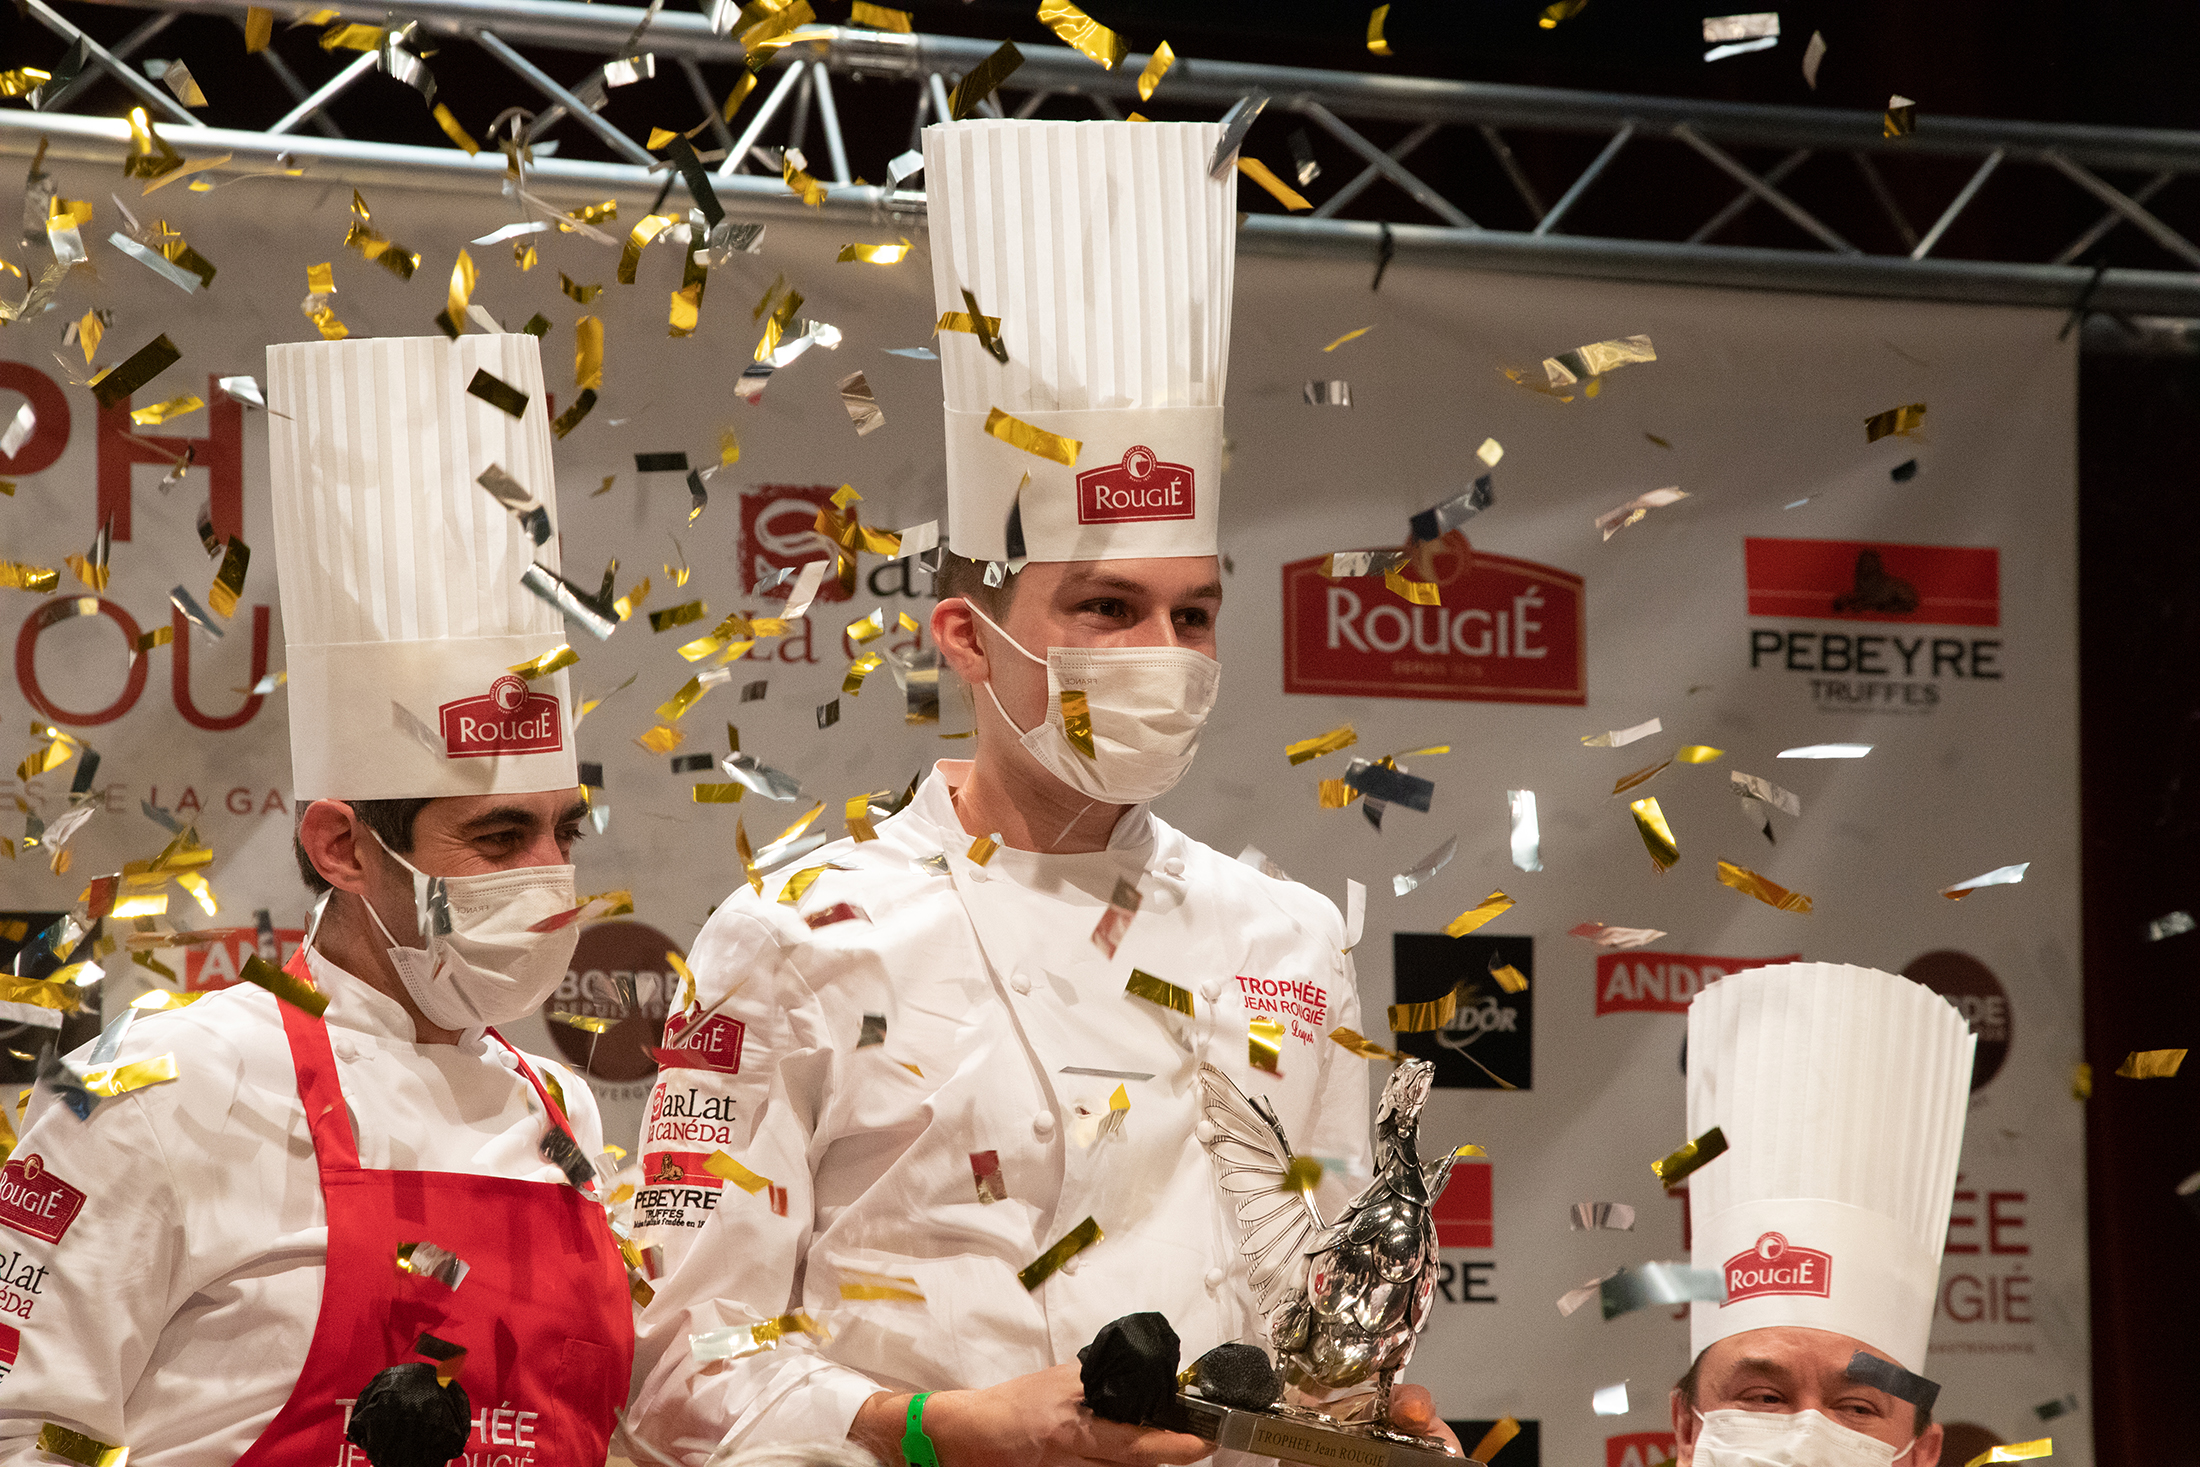 L'image montre un jeune chef cuisinier, vainqueur du prestigieux trophée Jean Rougié, prix qui lui est remis sous une pluie de paillettes dorées.